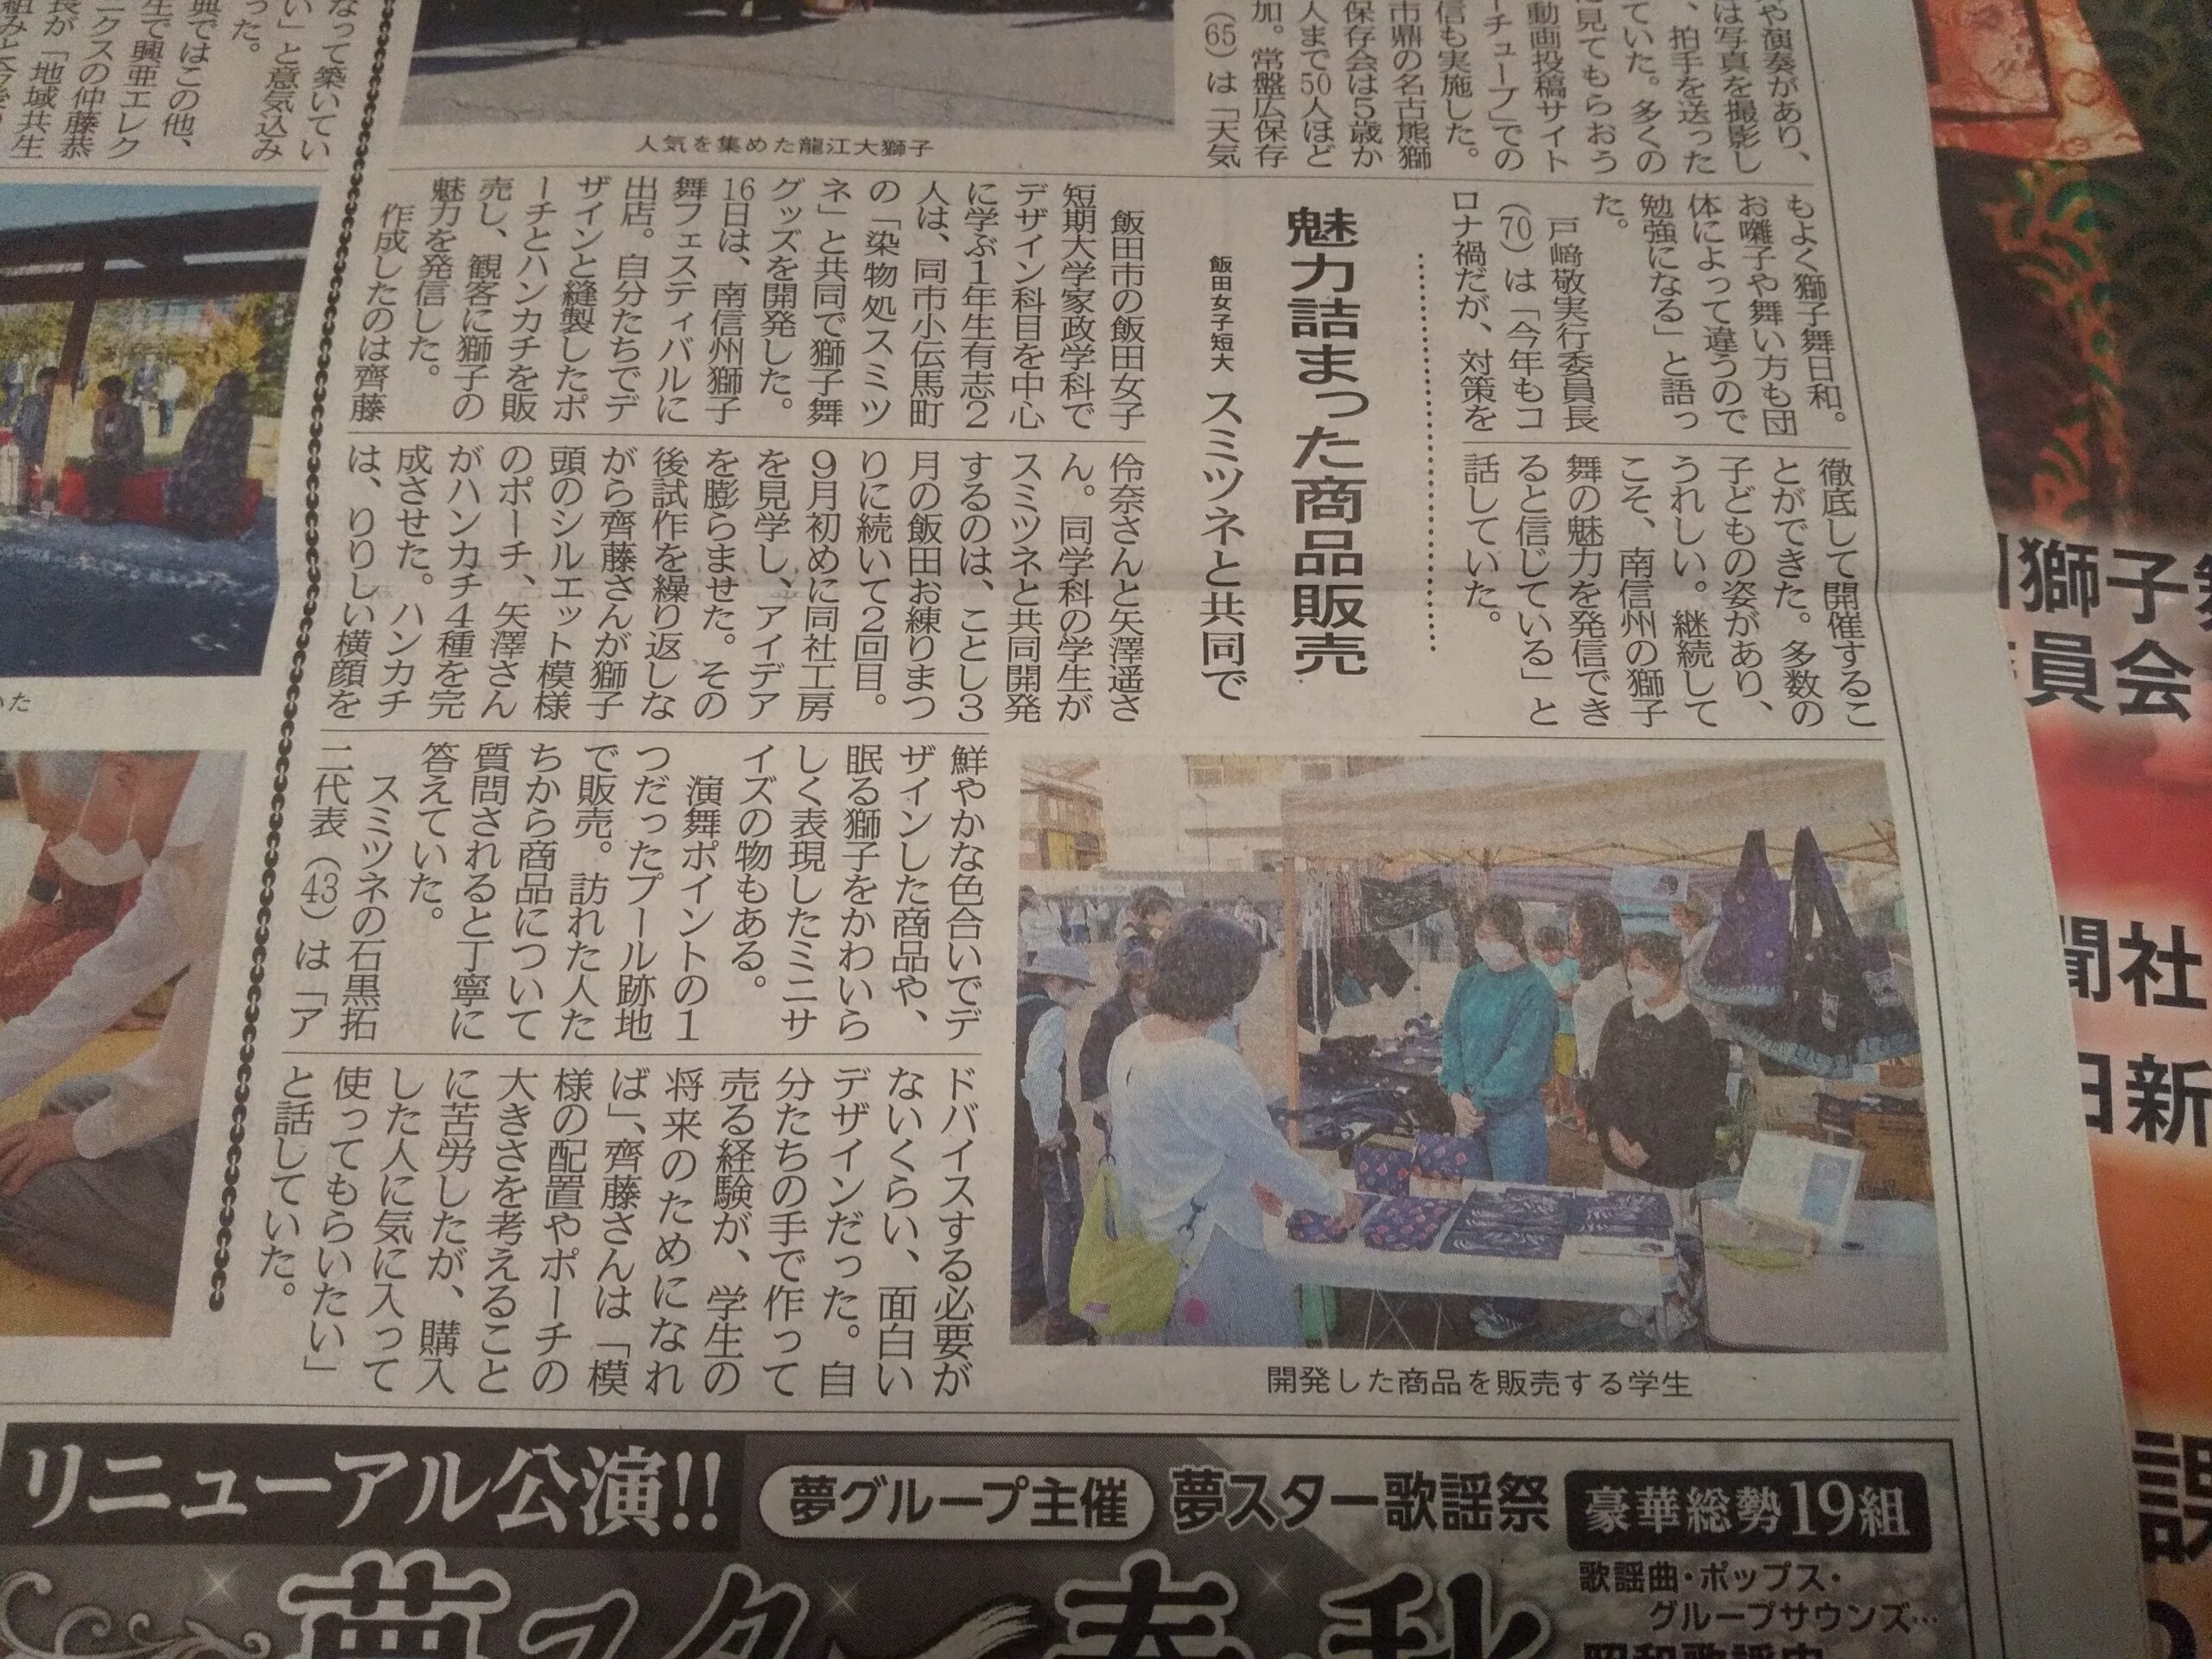 「南信州新聞」様で、「飯田女子短期大学さんとのコラボ企画」の記事が紹介されました。